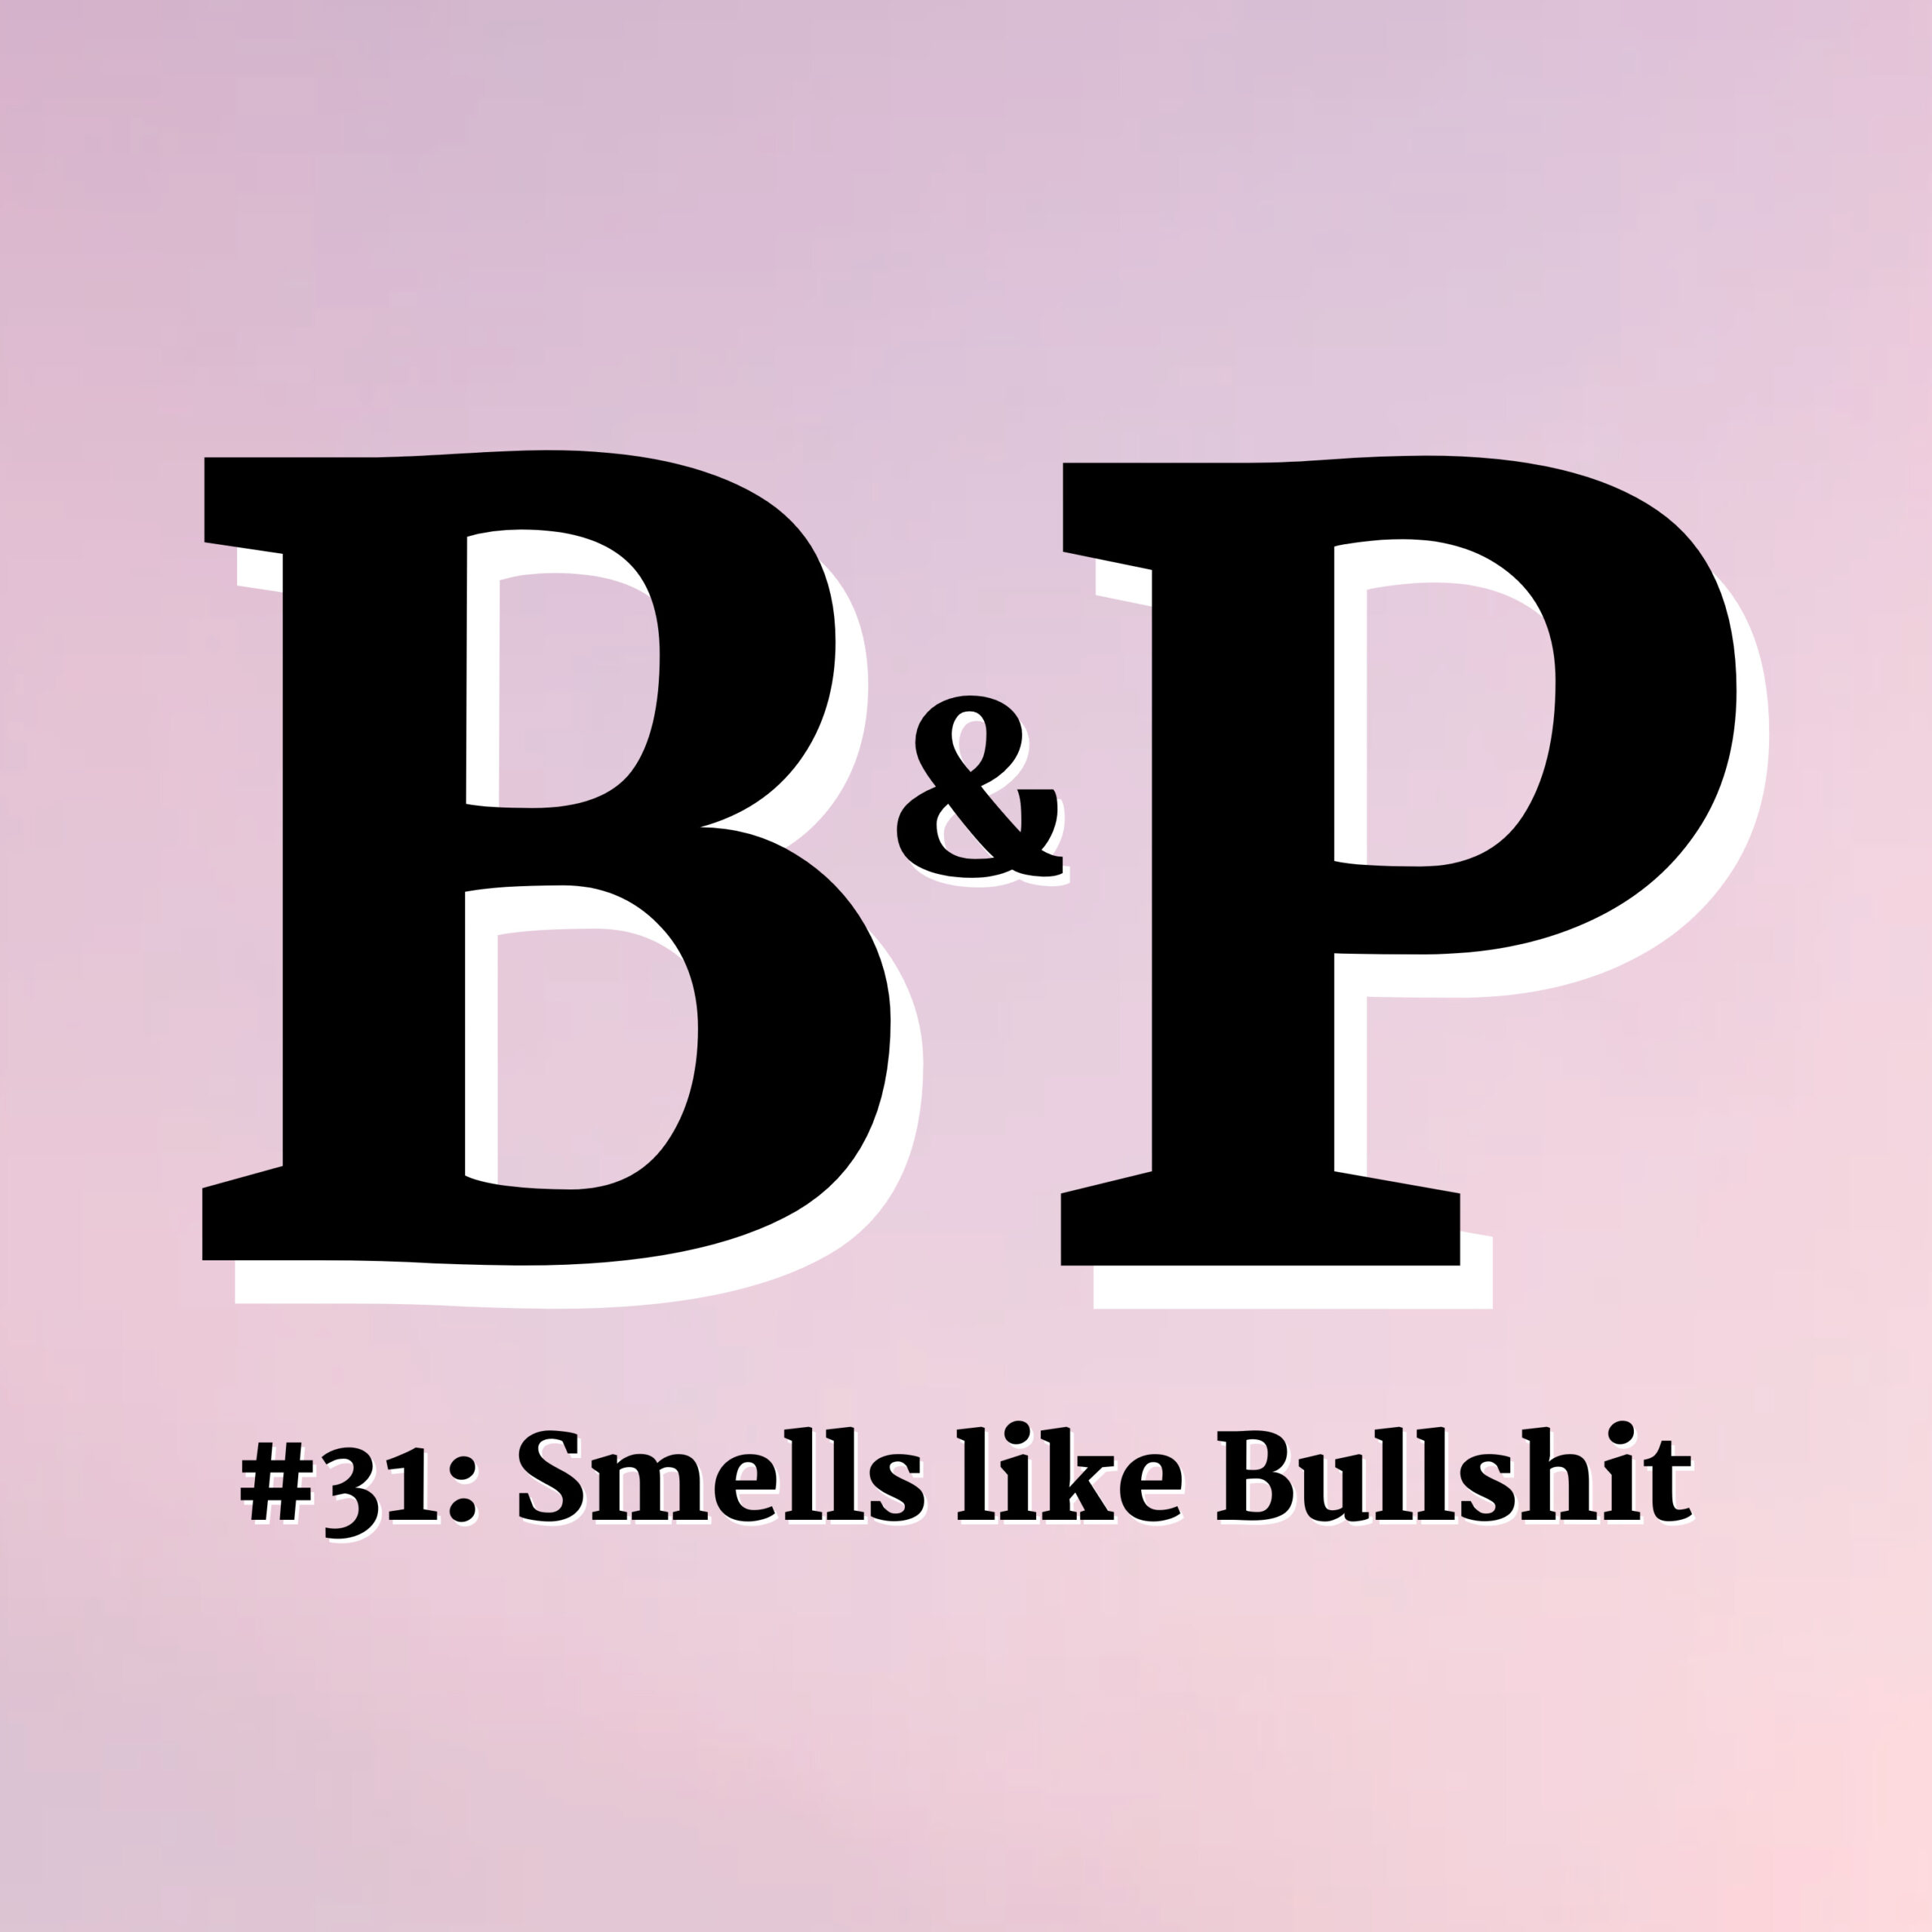 #31 Smells like Bullshit